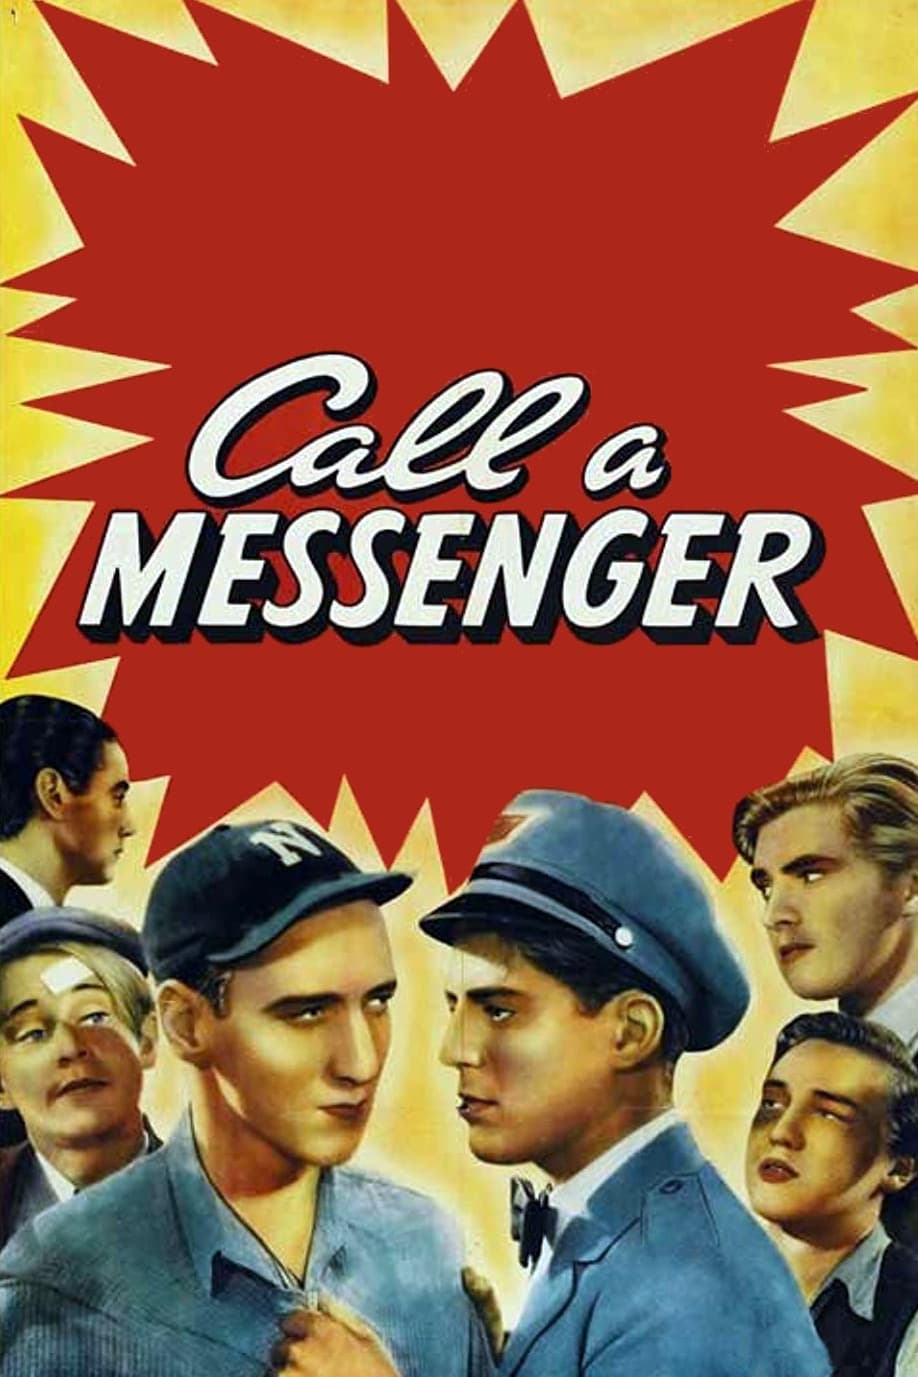 Call a Messenger